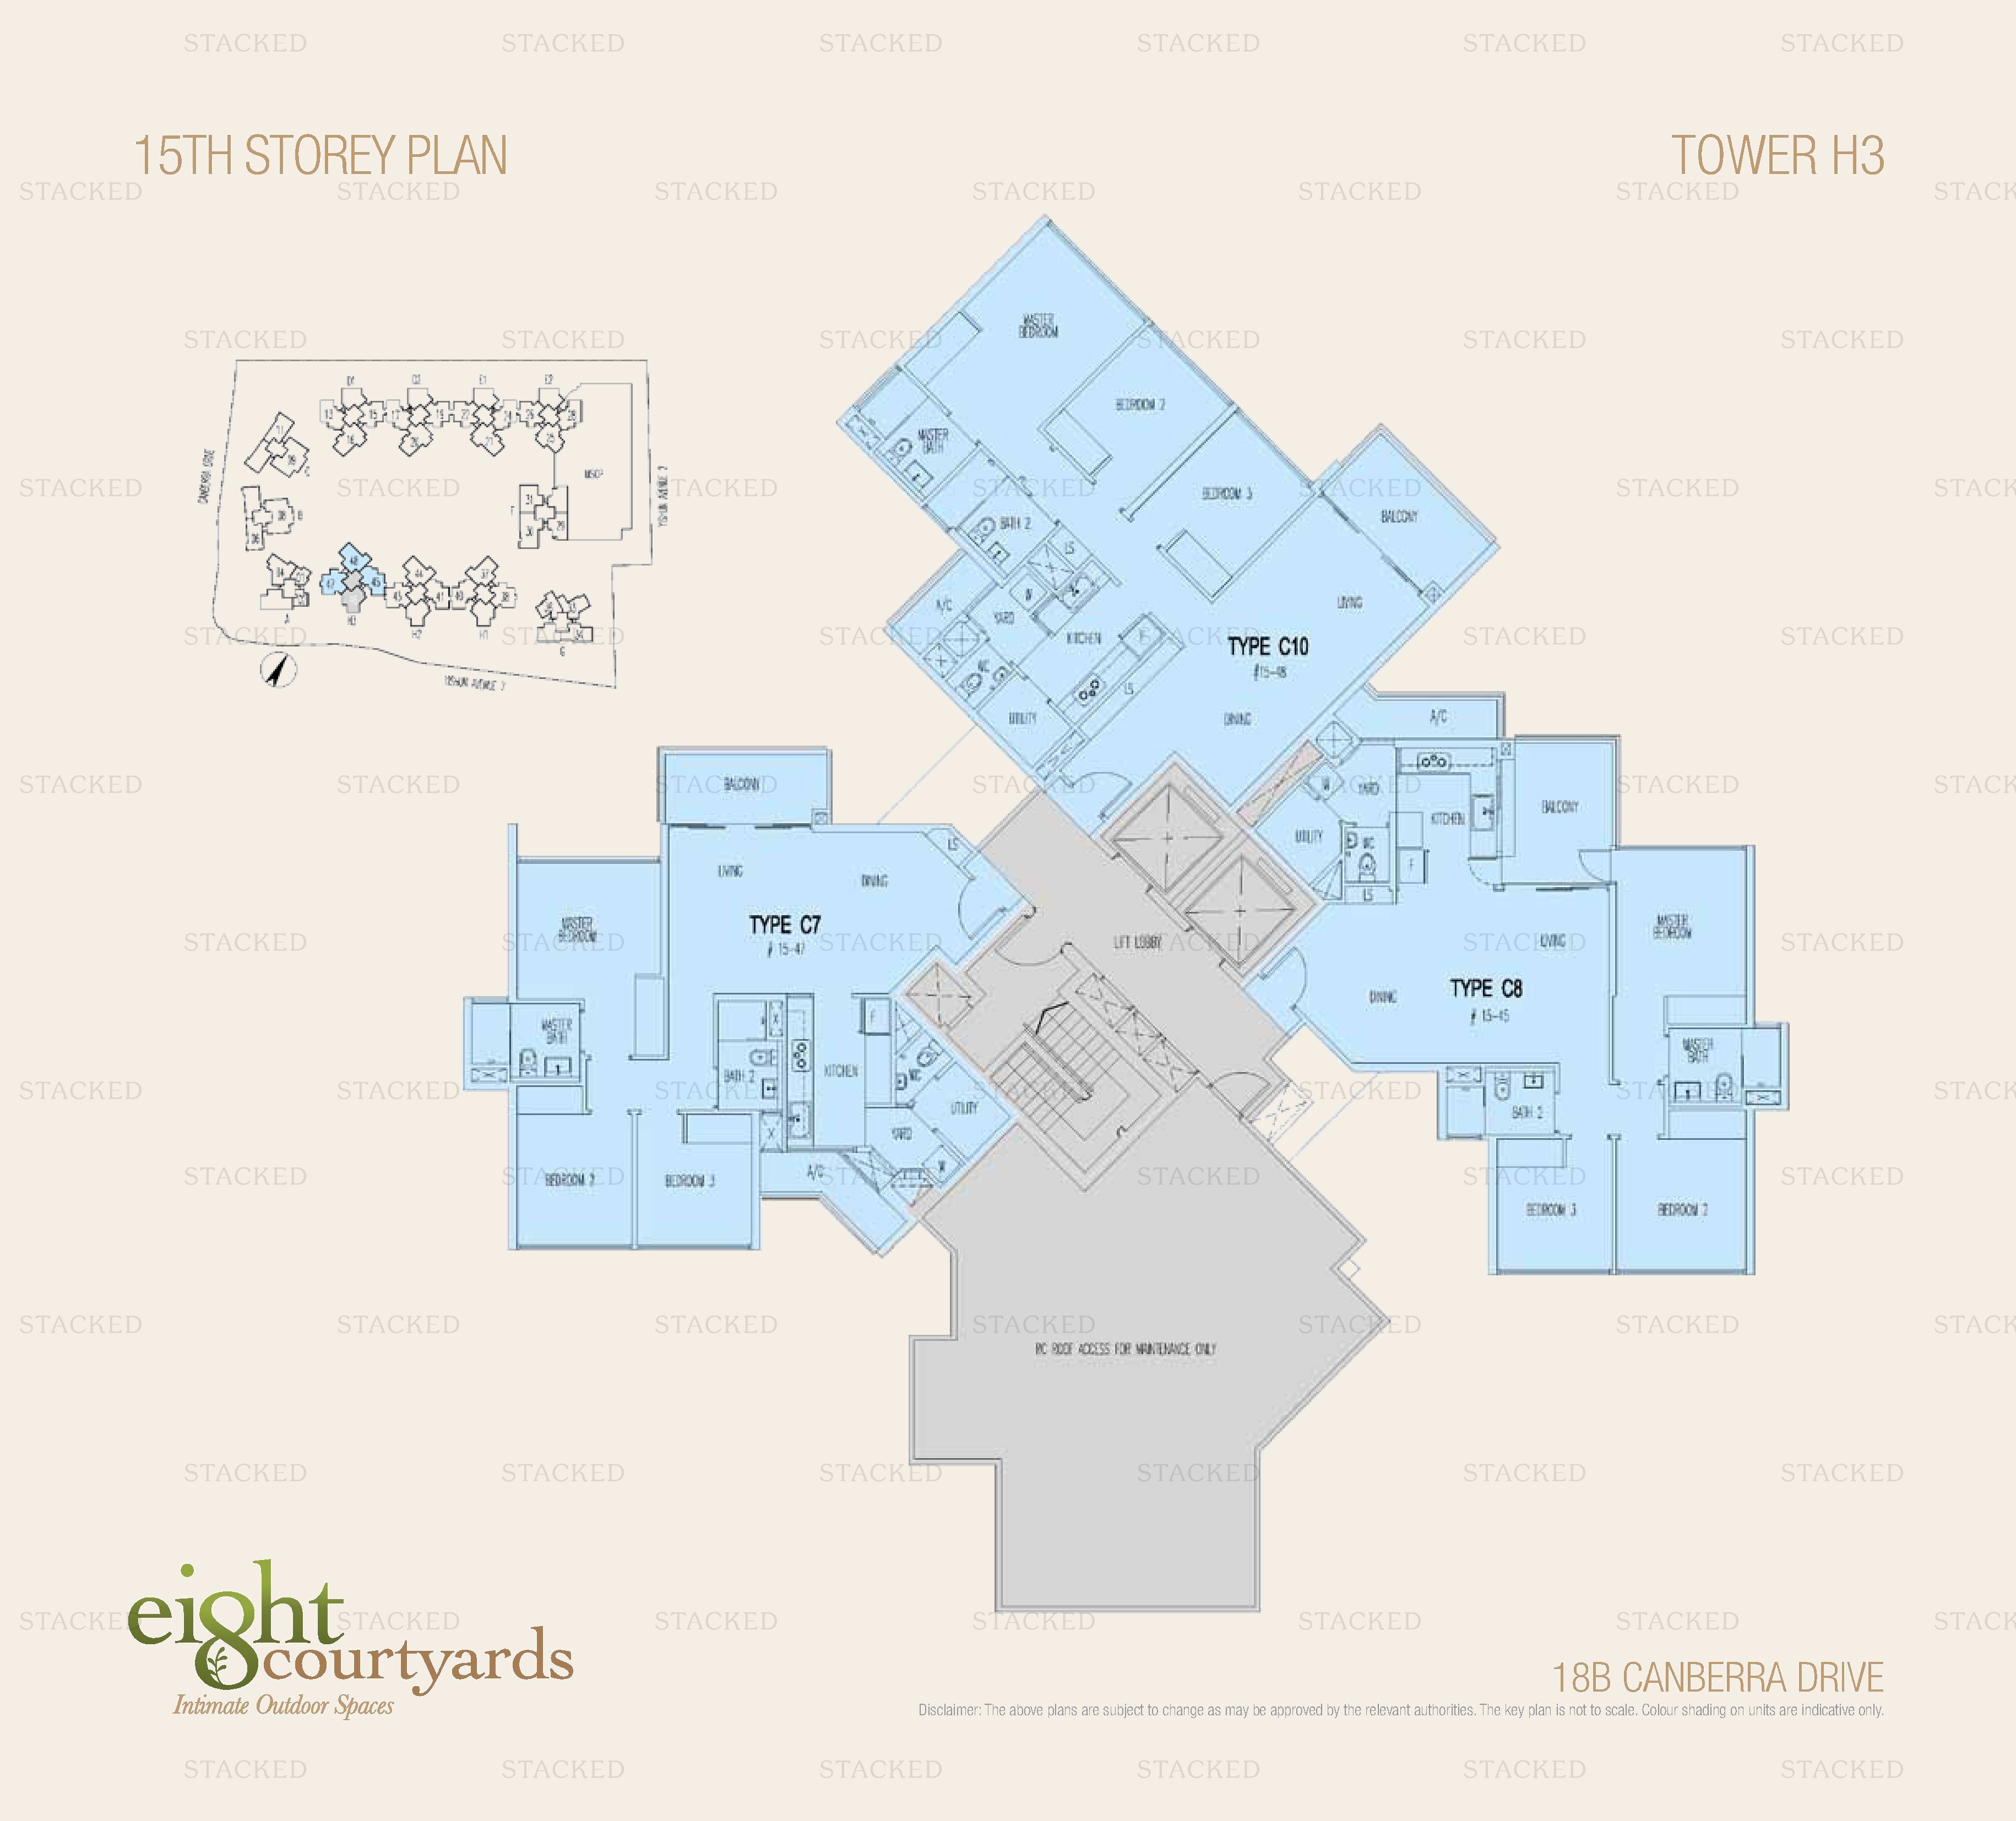 Eight Courtyards floor plan